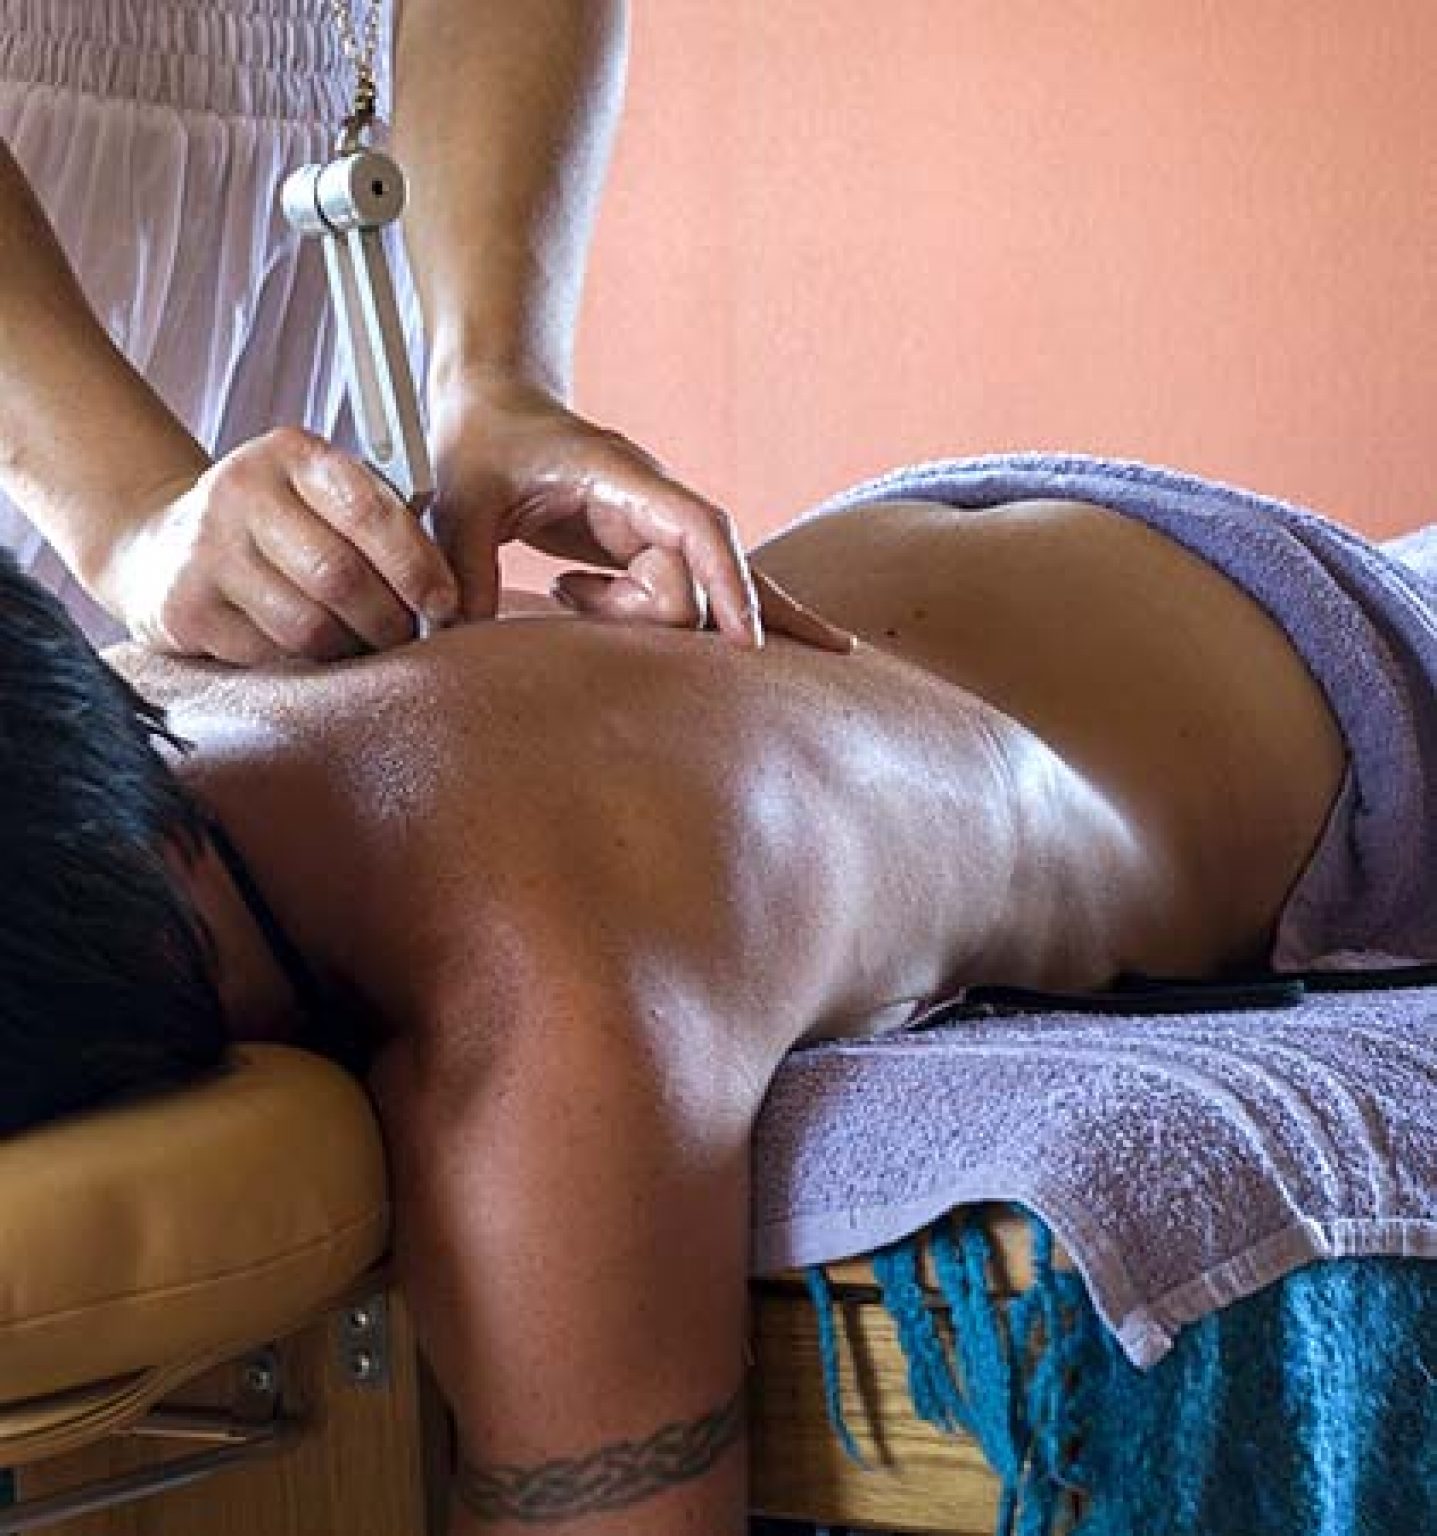 Arizona erotic massage full body for men